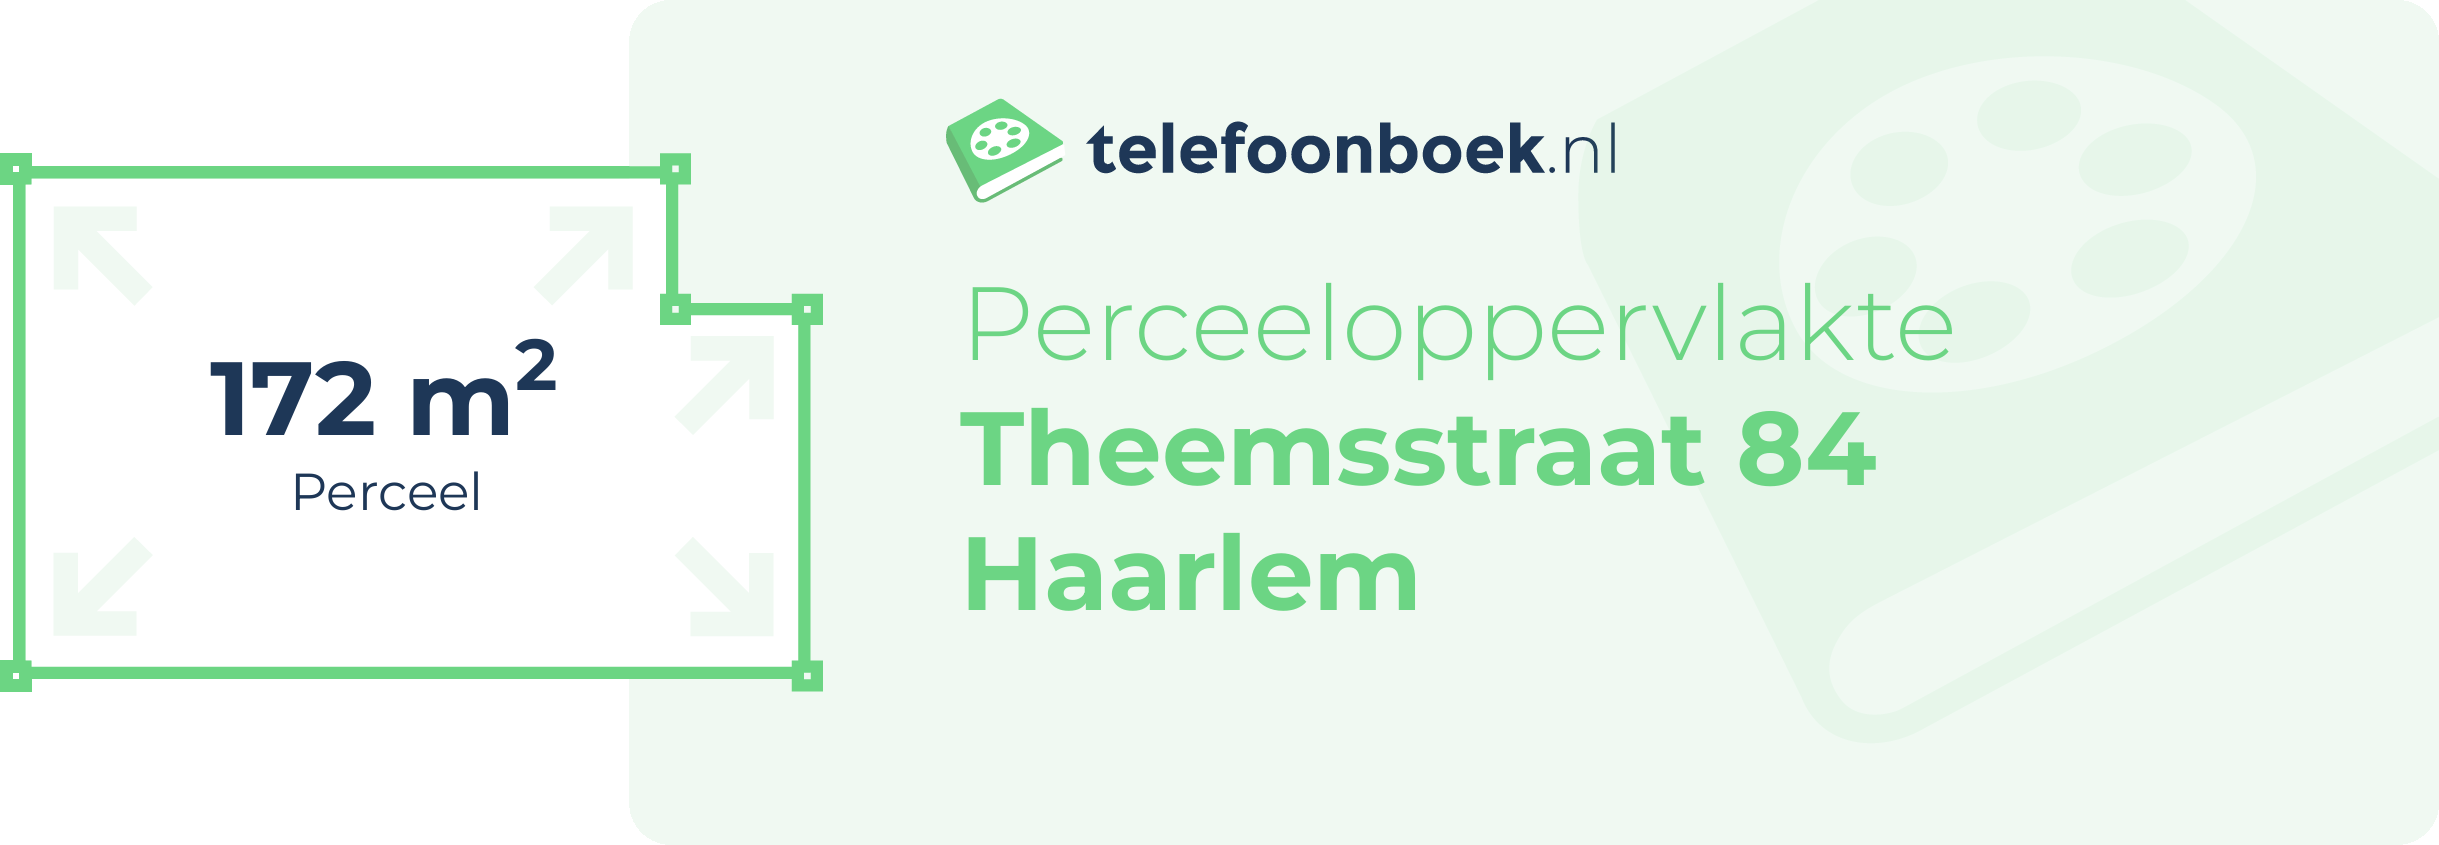 Perceeloppervlakte Theemsstraat 84 Haarlem